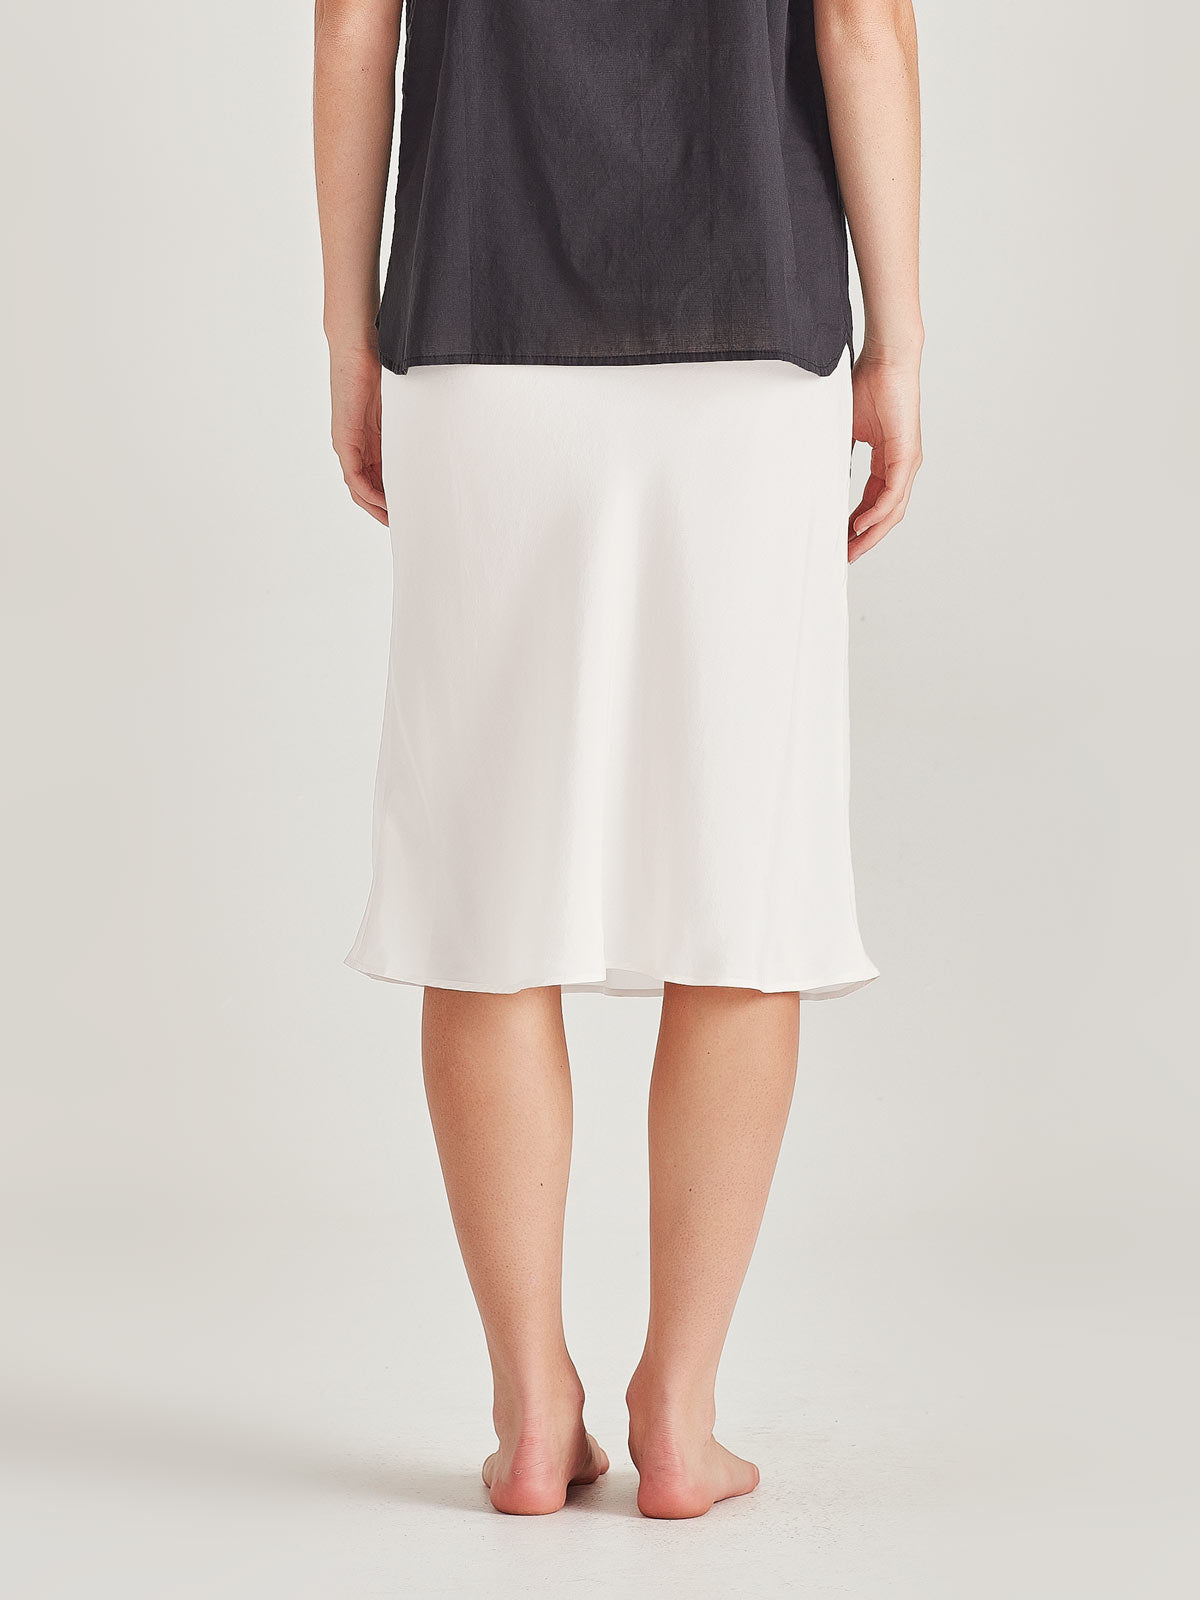 Cotton Half Slip Skirt With Net Frill for Women Underskirt, Half